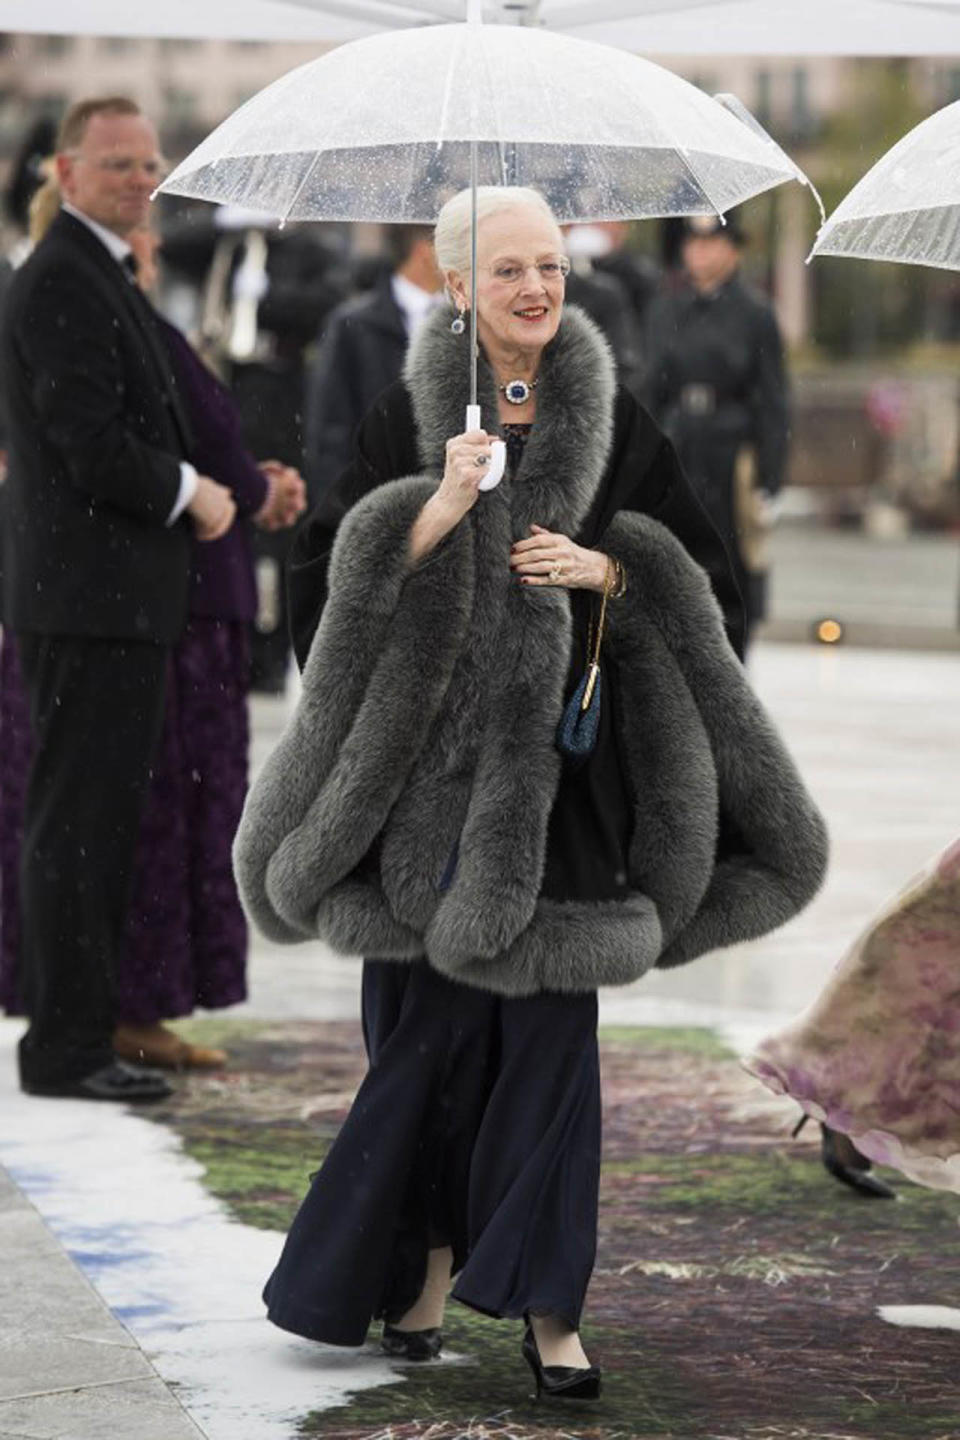 Zum 80. Geburtstag von König Harald und Königin Sonja von Norwegen durfte ihr Outfit etwas mondäner ausfallen. Vor allem der Mantel mit Pelzkragen und XXL-Schlagärmeln war ein waschechter Hingucker. (Bild-Copyright: Nesvold, Jon Olav/NTB scanpix/AFP)